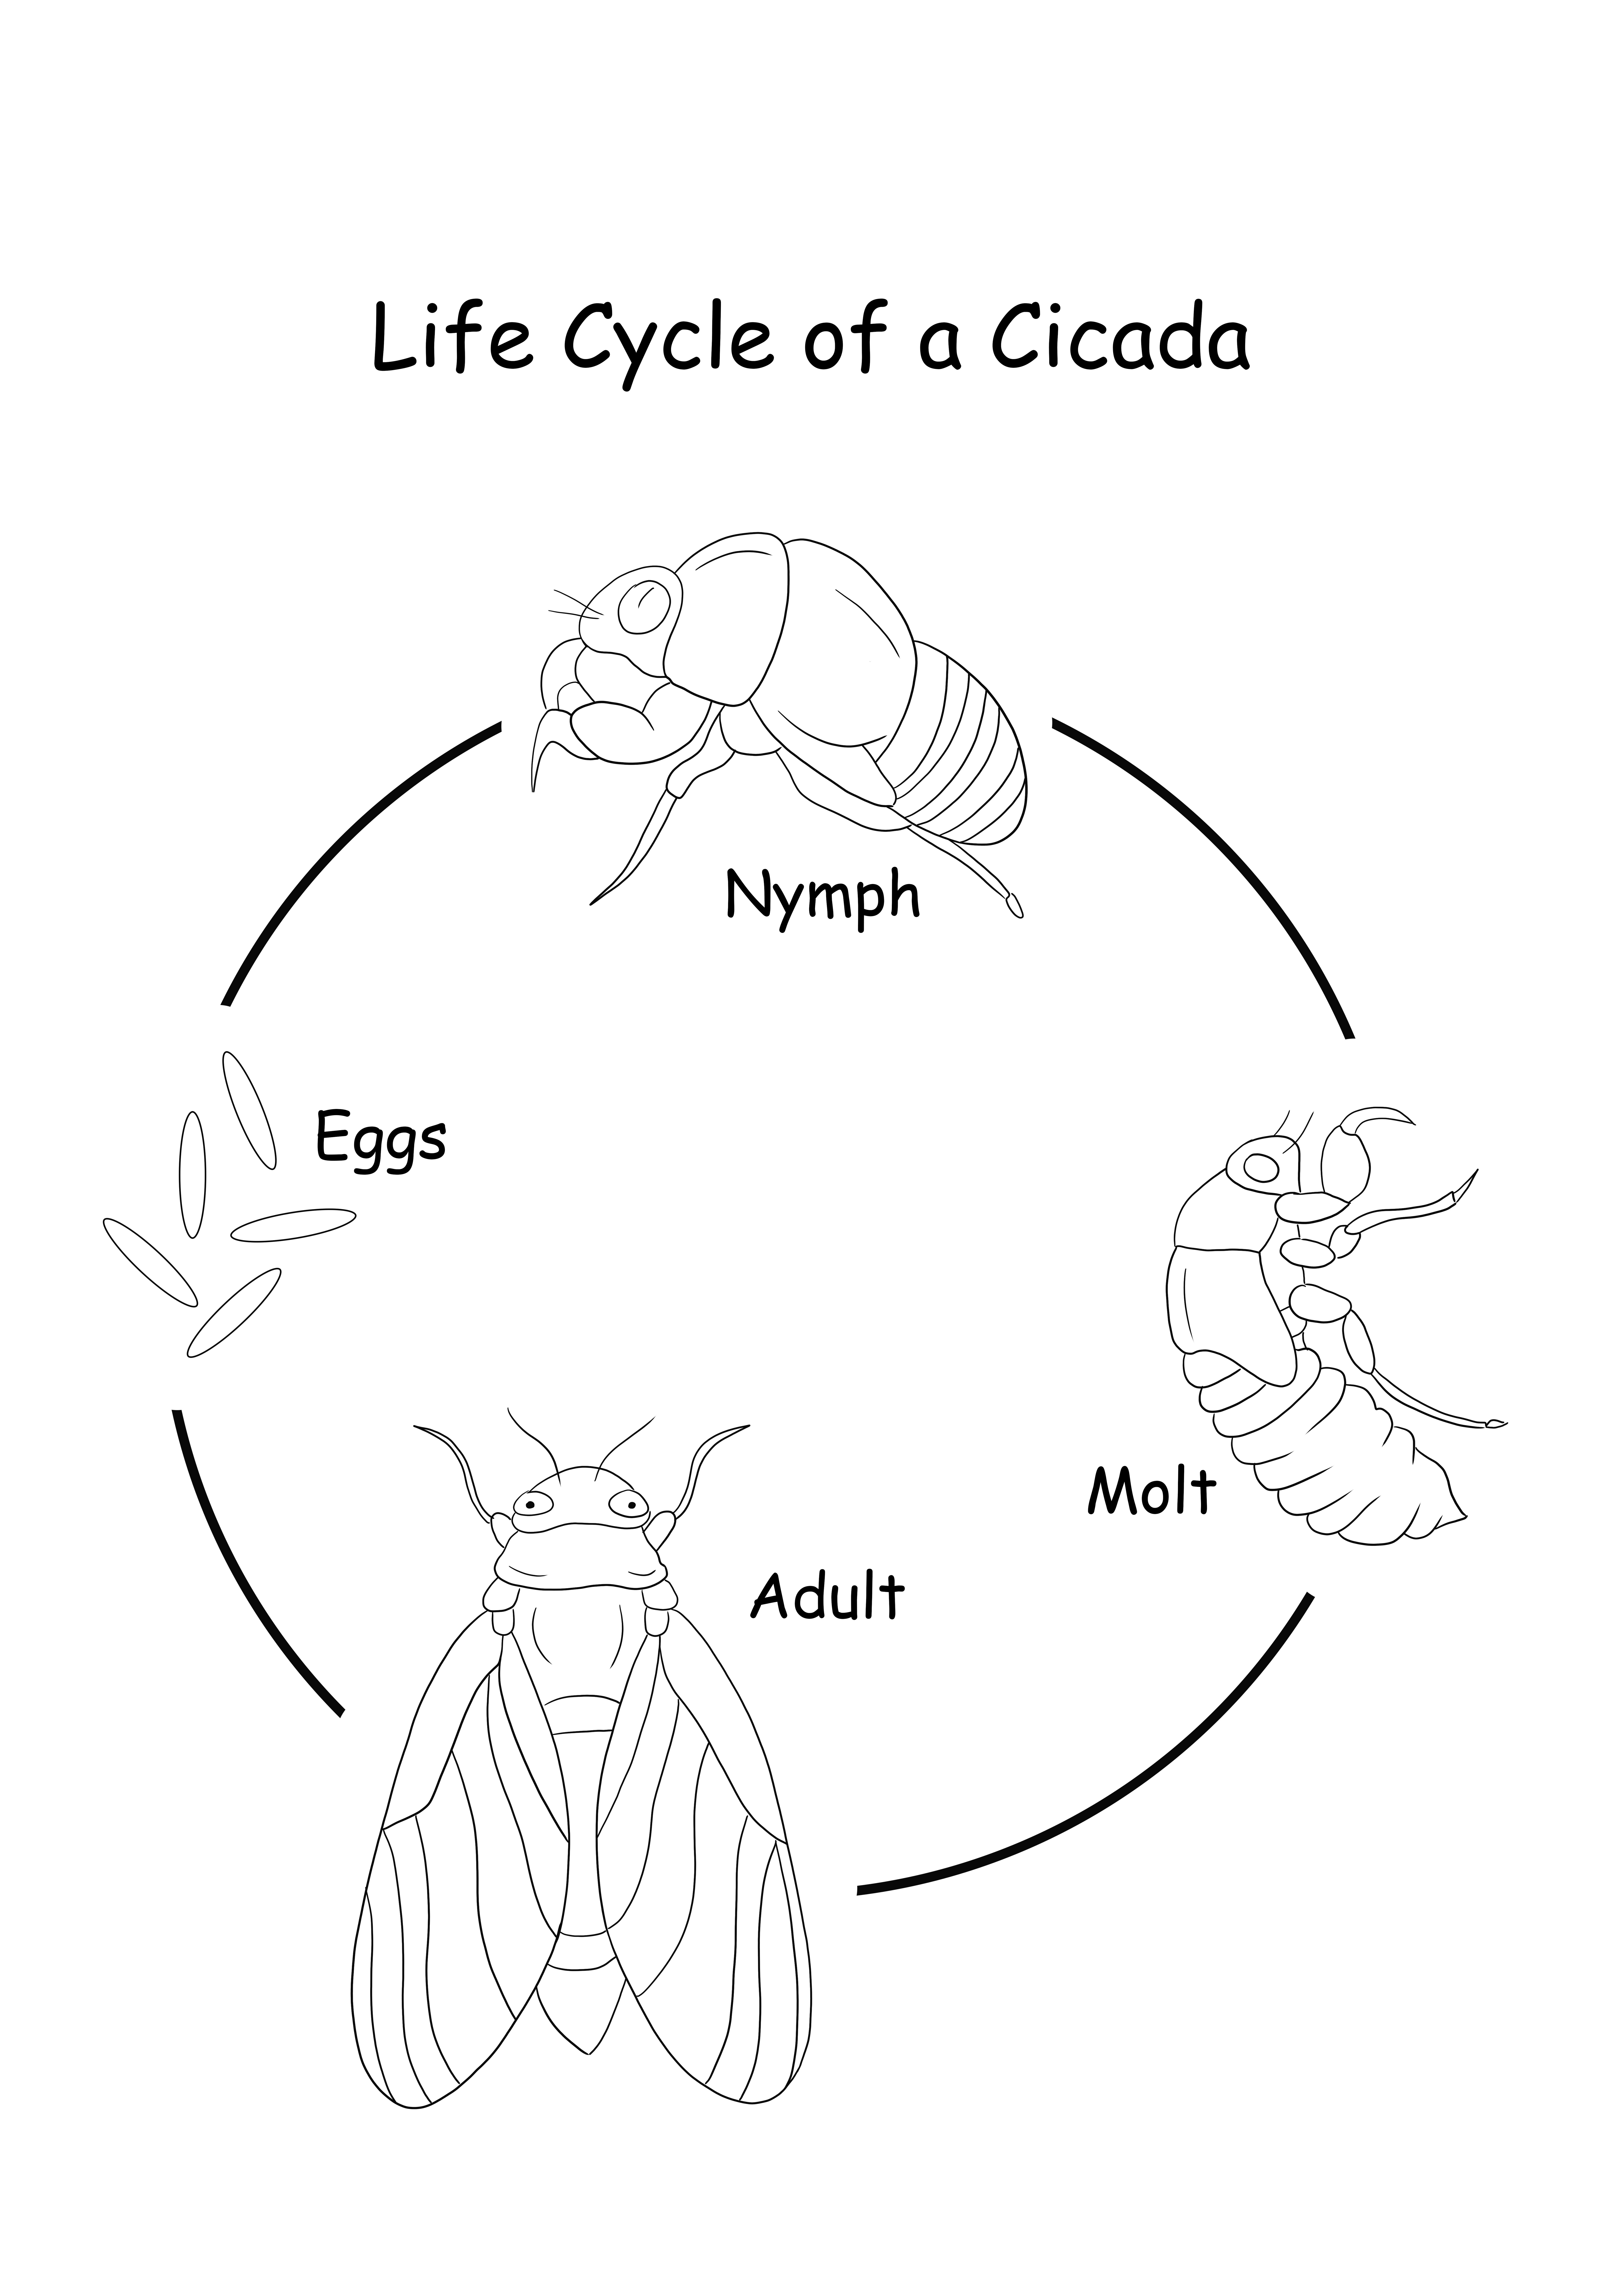 Cykl życia cykady – obraz do wydrukowania i pobrania za darmo